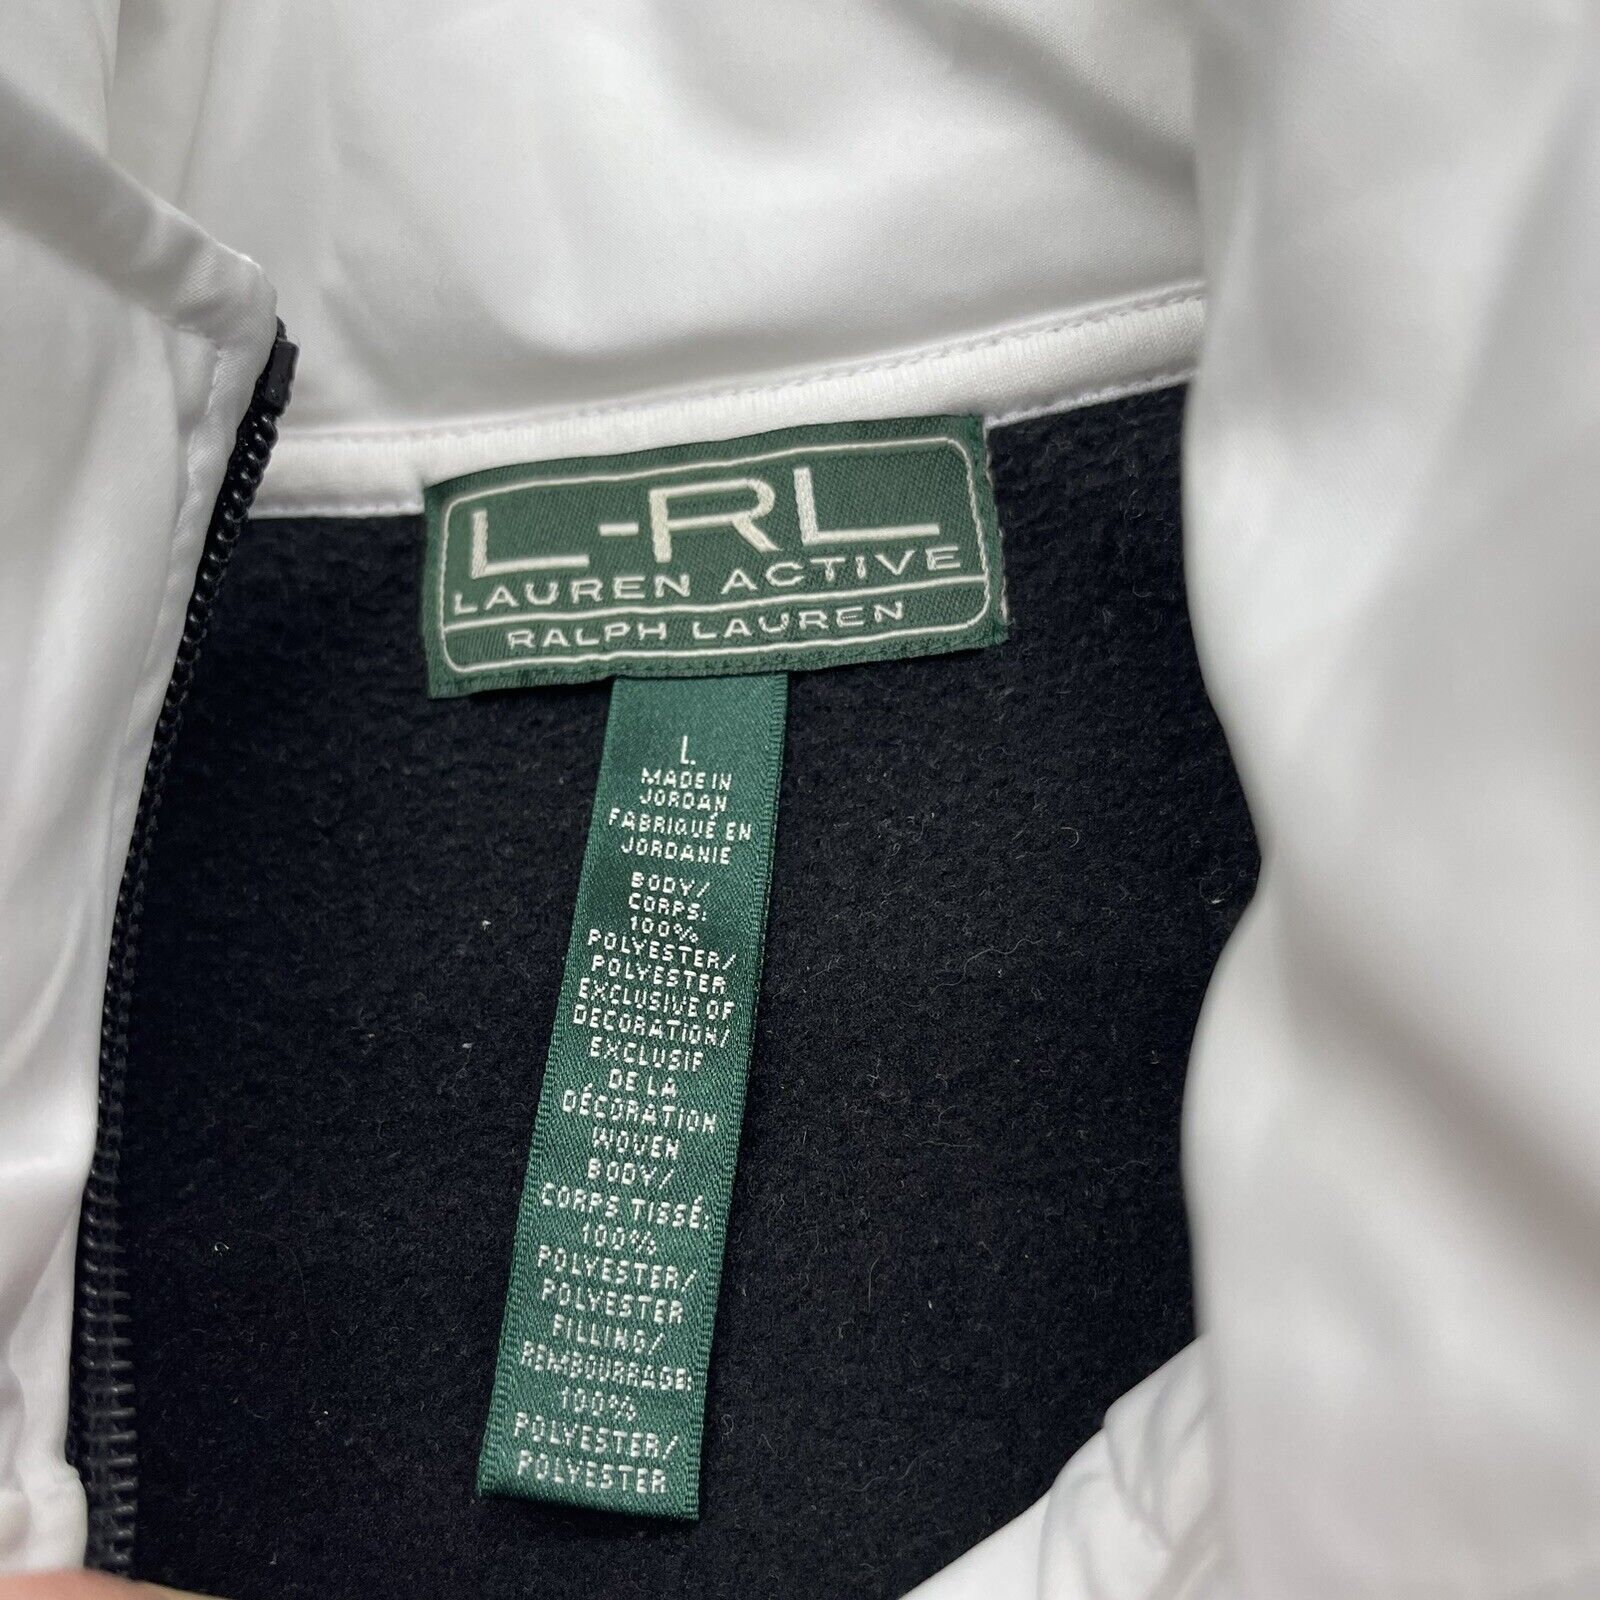 Lauren Active L-RL Ralph Lauren Black & White Quilted Fleece Jacket Si -  beyond exchange